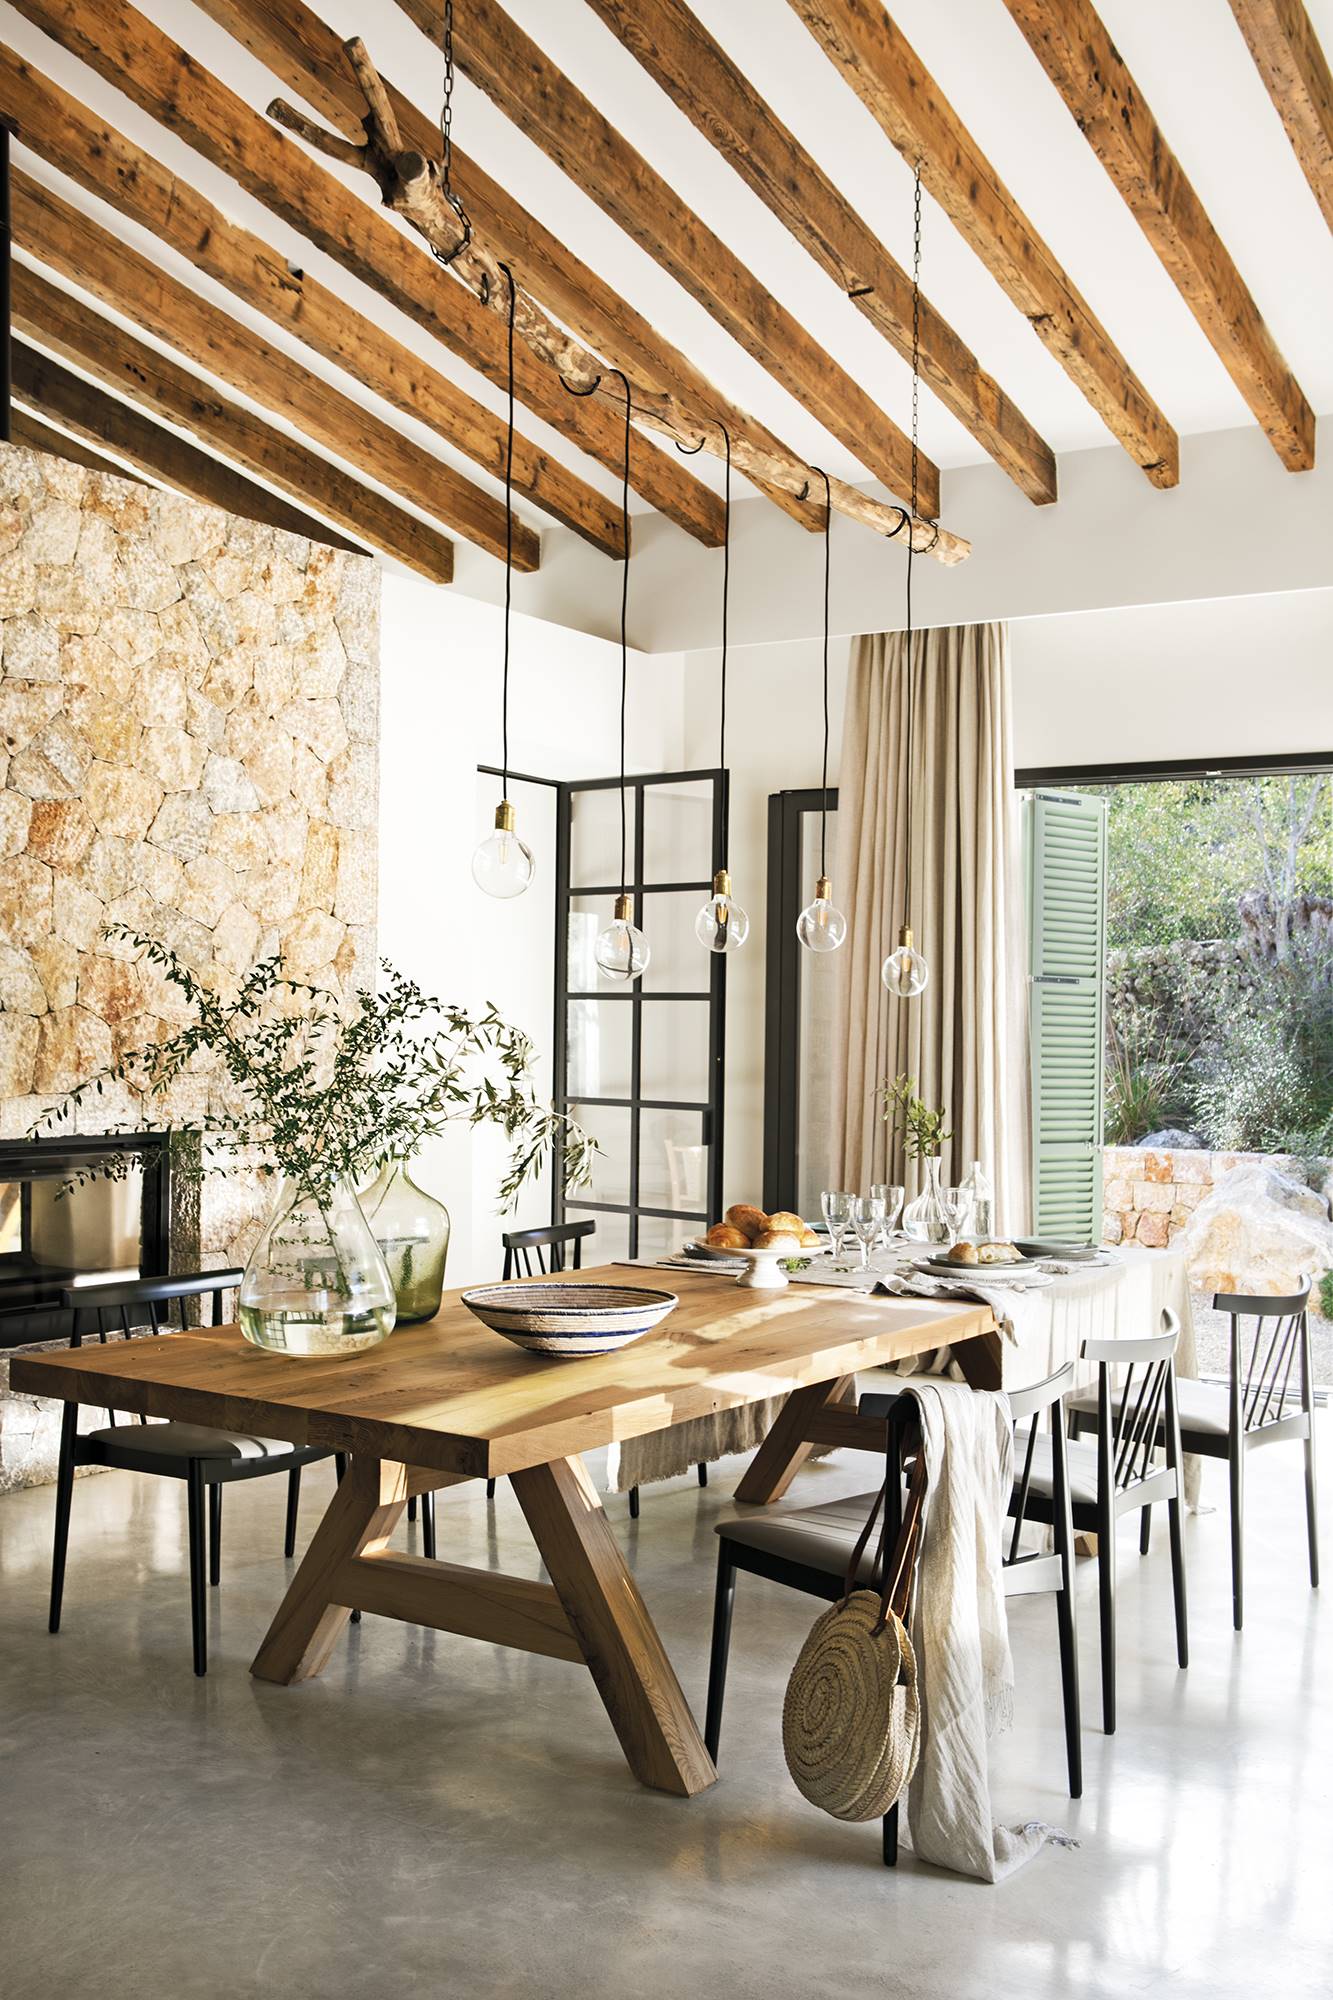 Comedor con aire rústico y de campo con mesa de madera, sillas, pared de piedra y vigas en el techo.